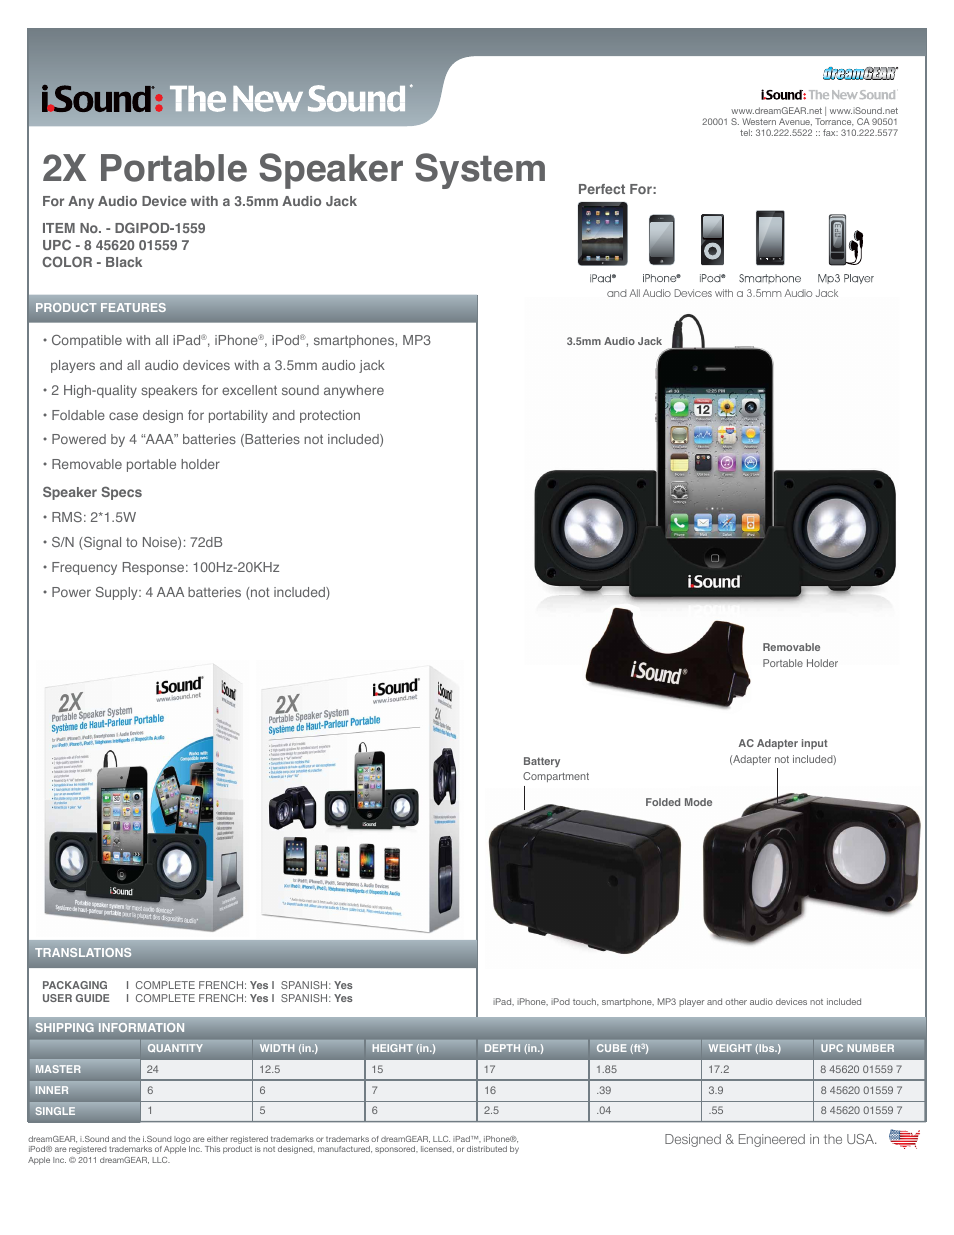 2X Portable Speaker System - Sell Sheet